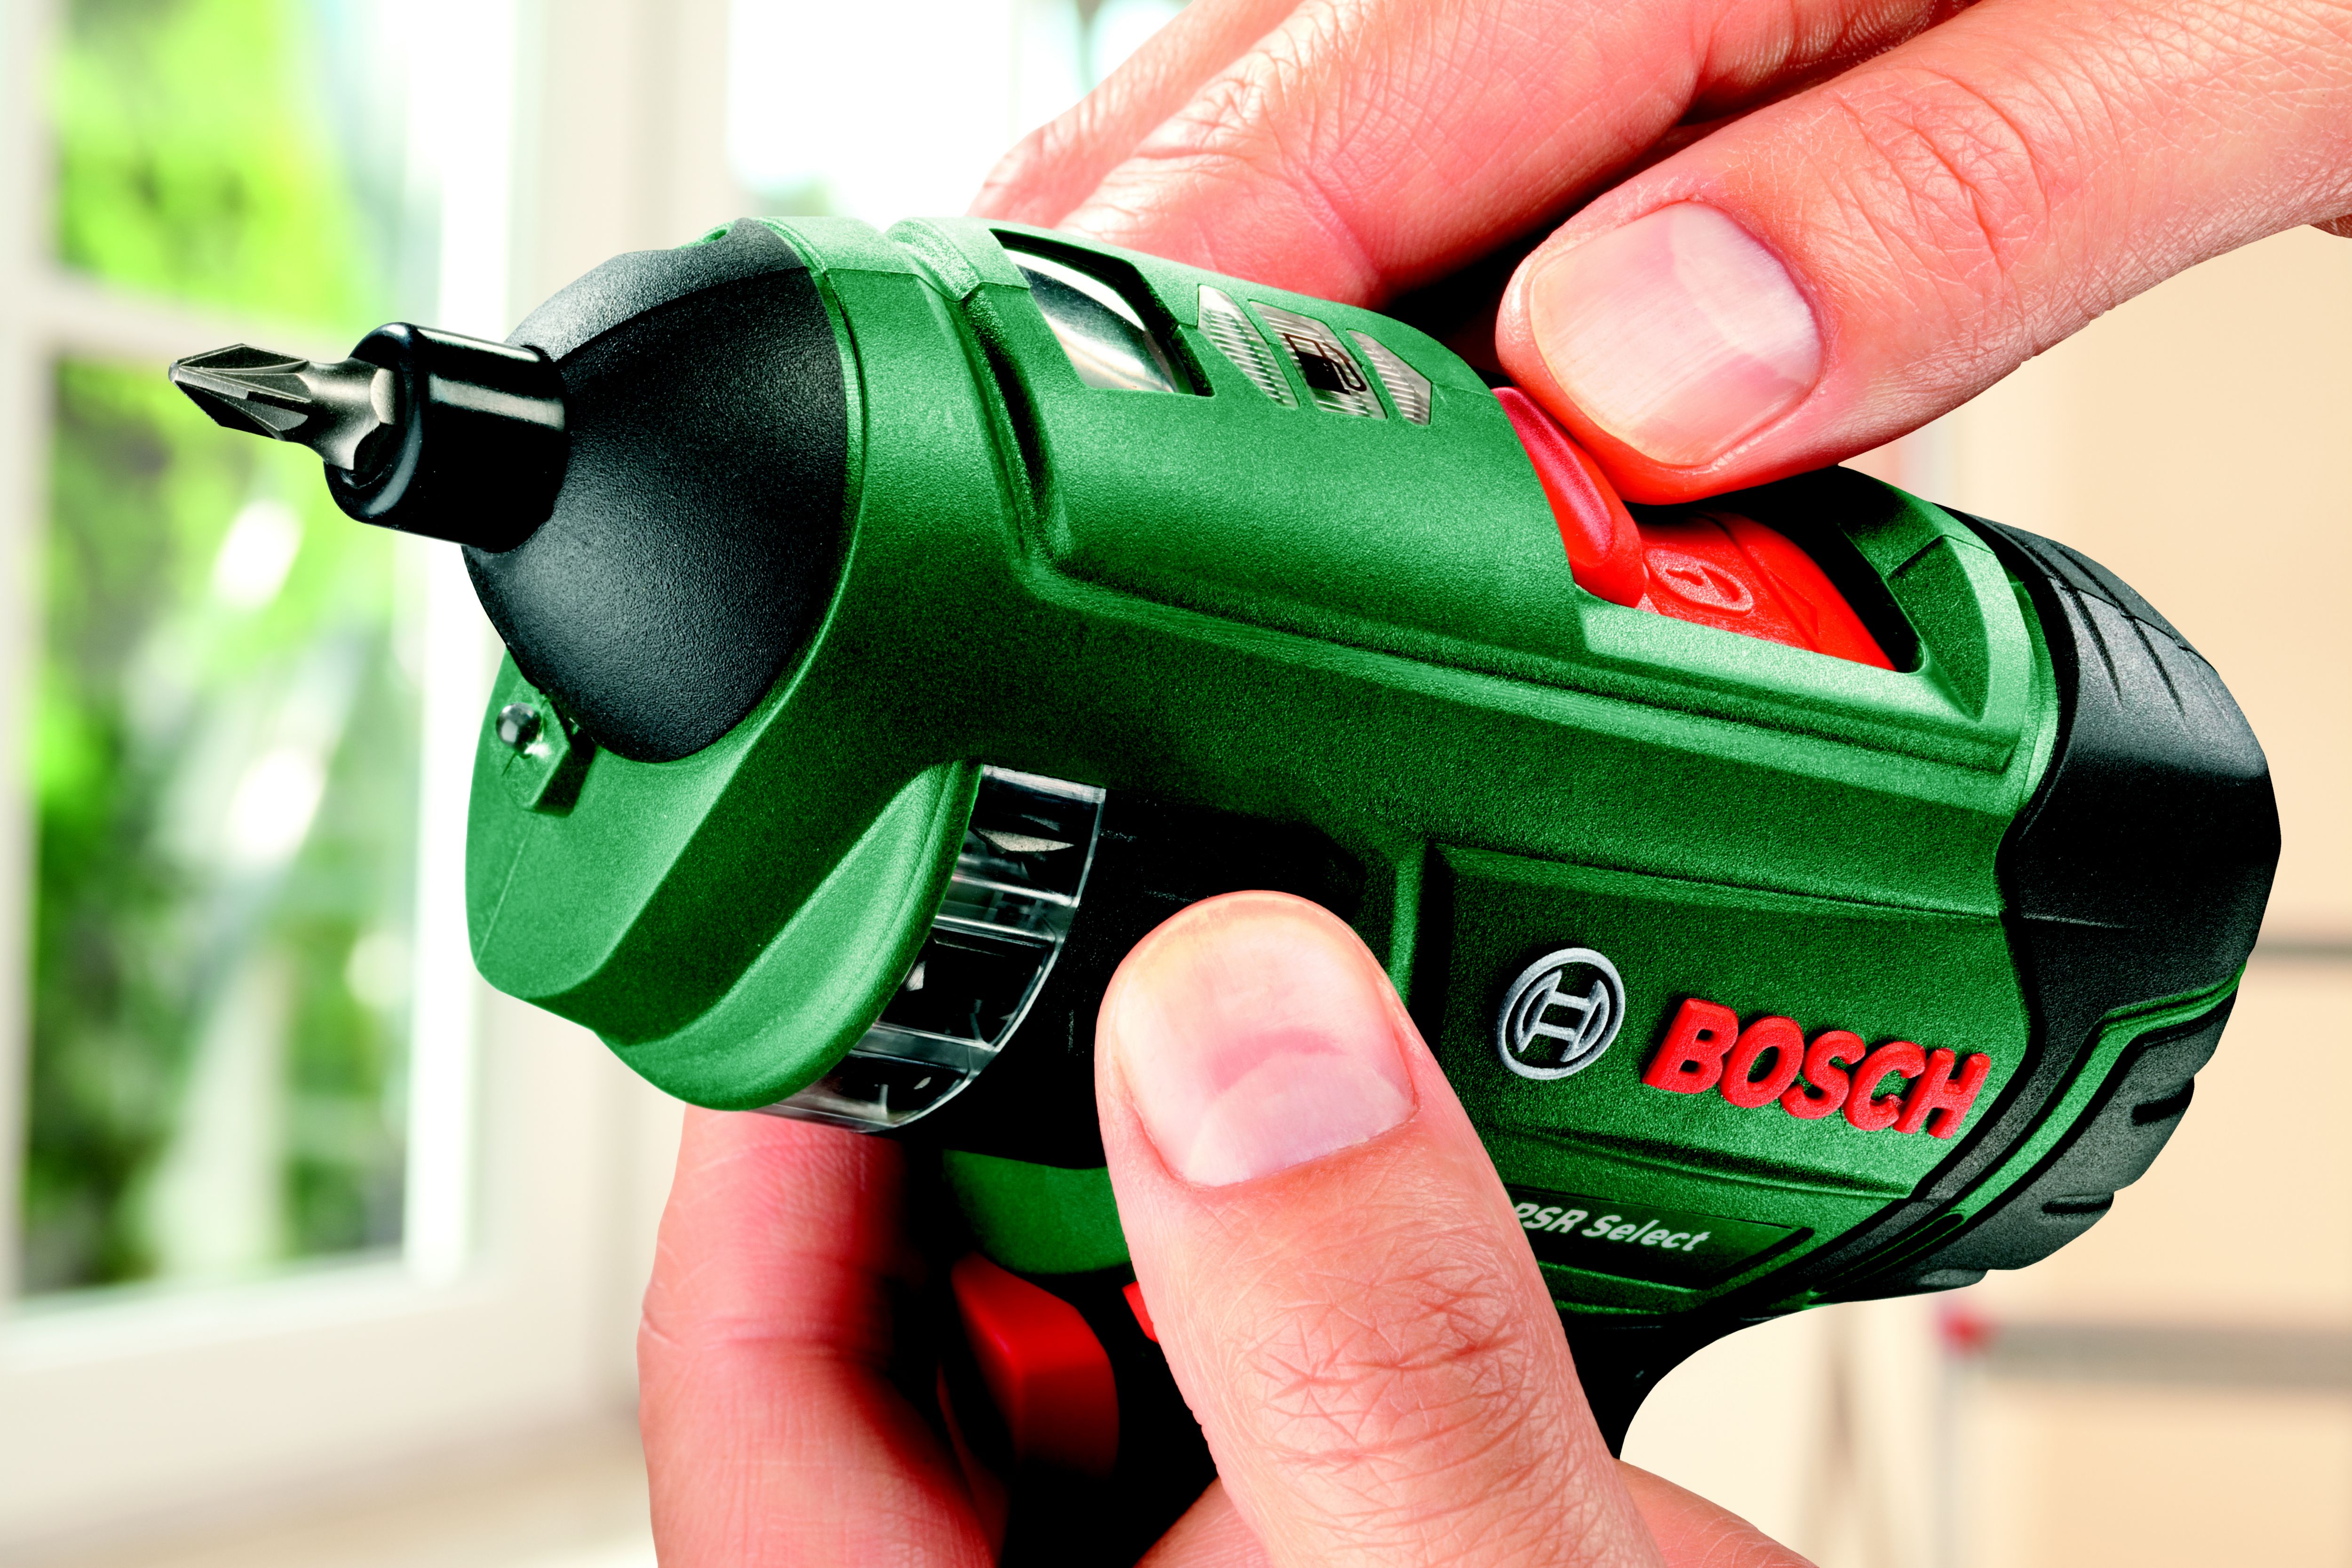 Bosch Bosch Home and Garden Cordless Screwdriver…